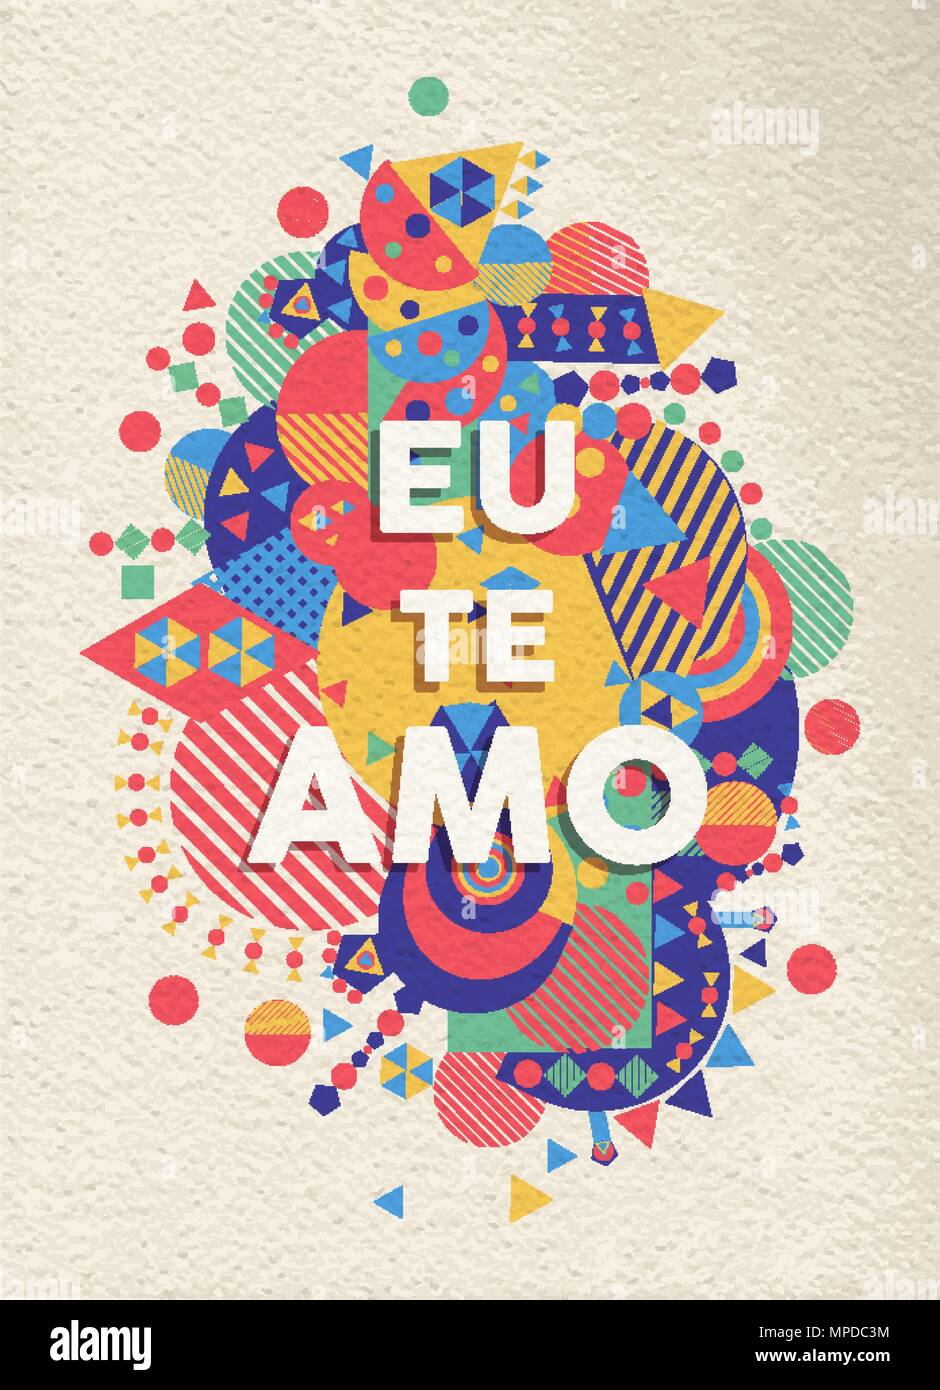 J'aime la typographie coloré affiche en langue portugaise. Citation romantique design avec la texture du papier de fond. Vecteur EPS10. Illustration de Vecteur